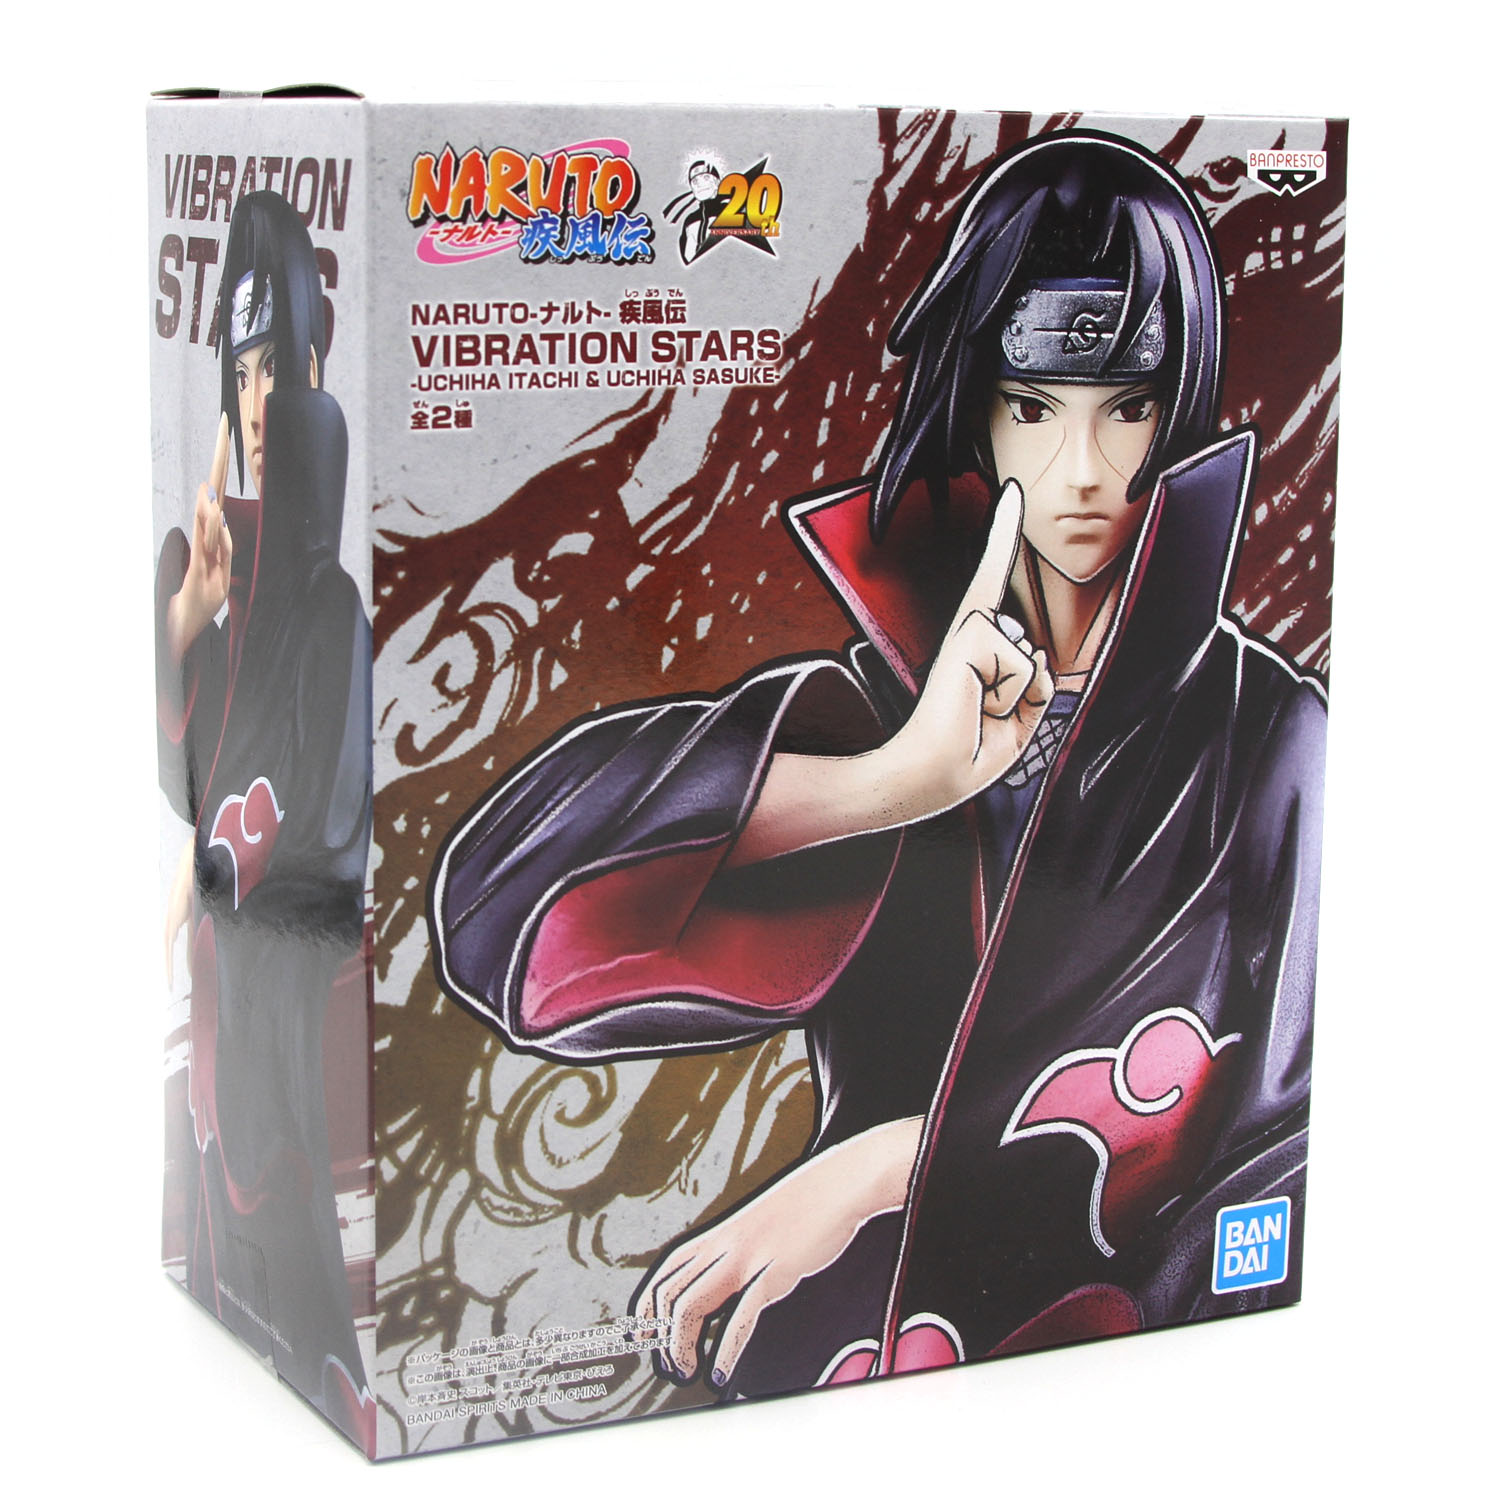 New Itachi Uchiha Naruto Vibration Stars Vinyl Figure Official Banpresto Ebay